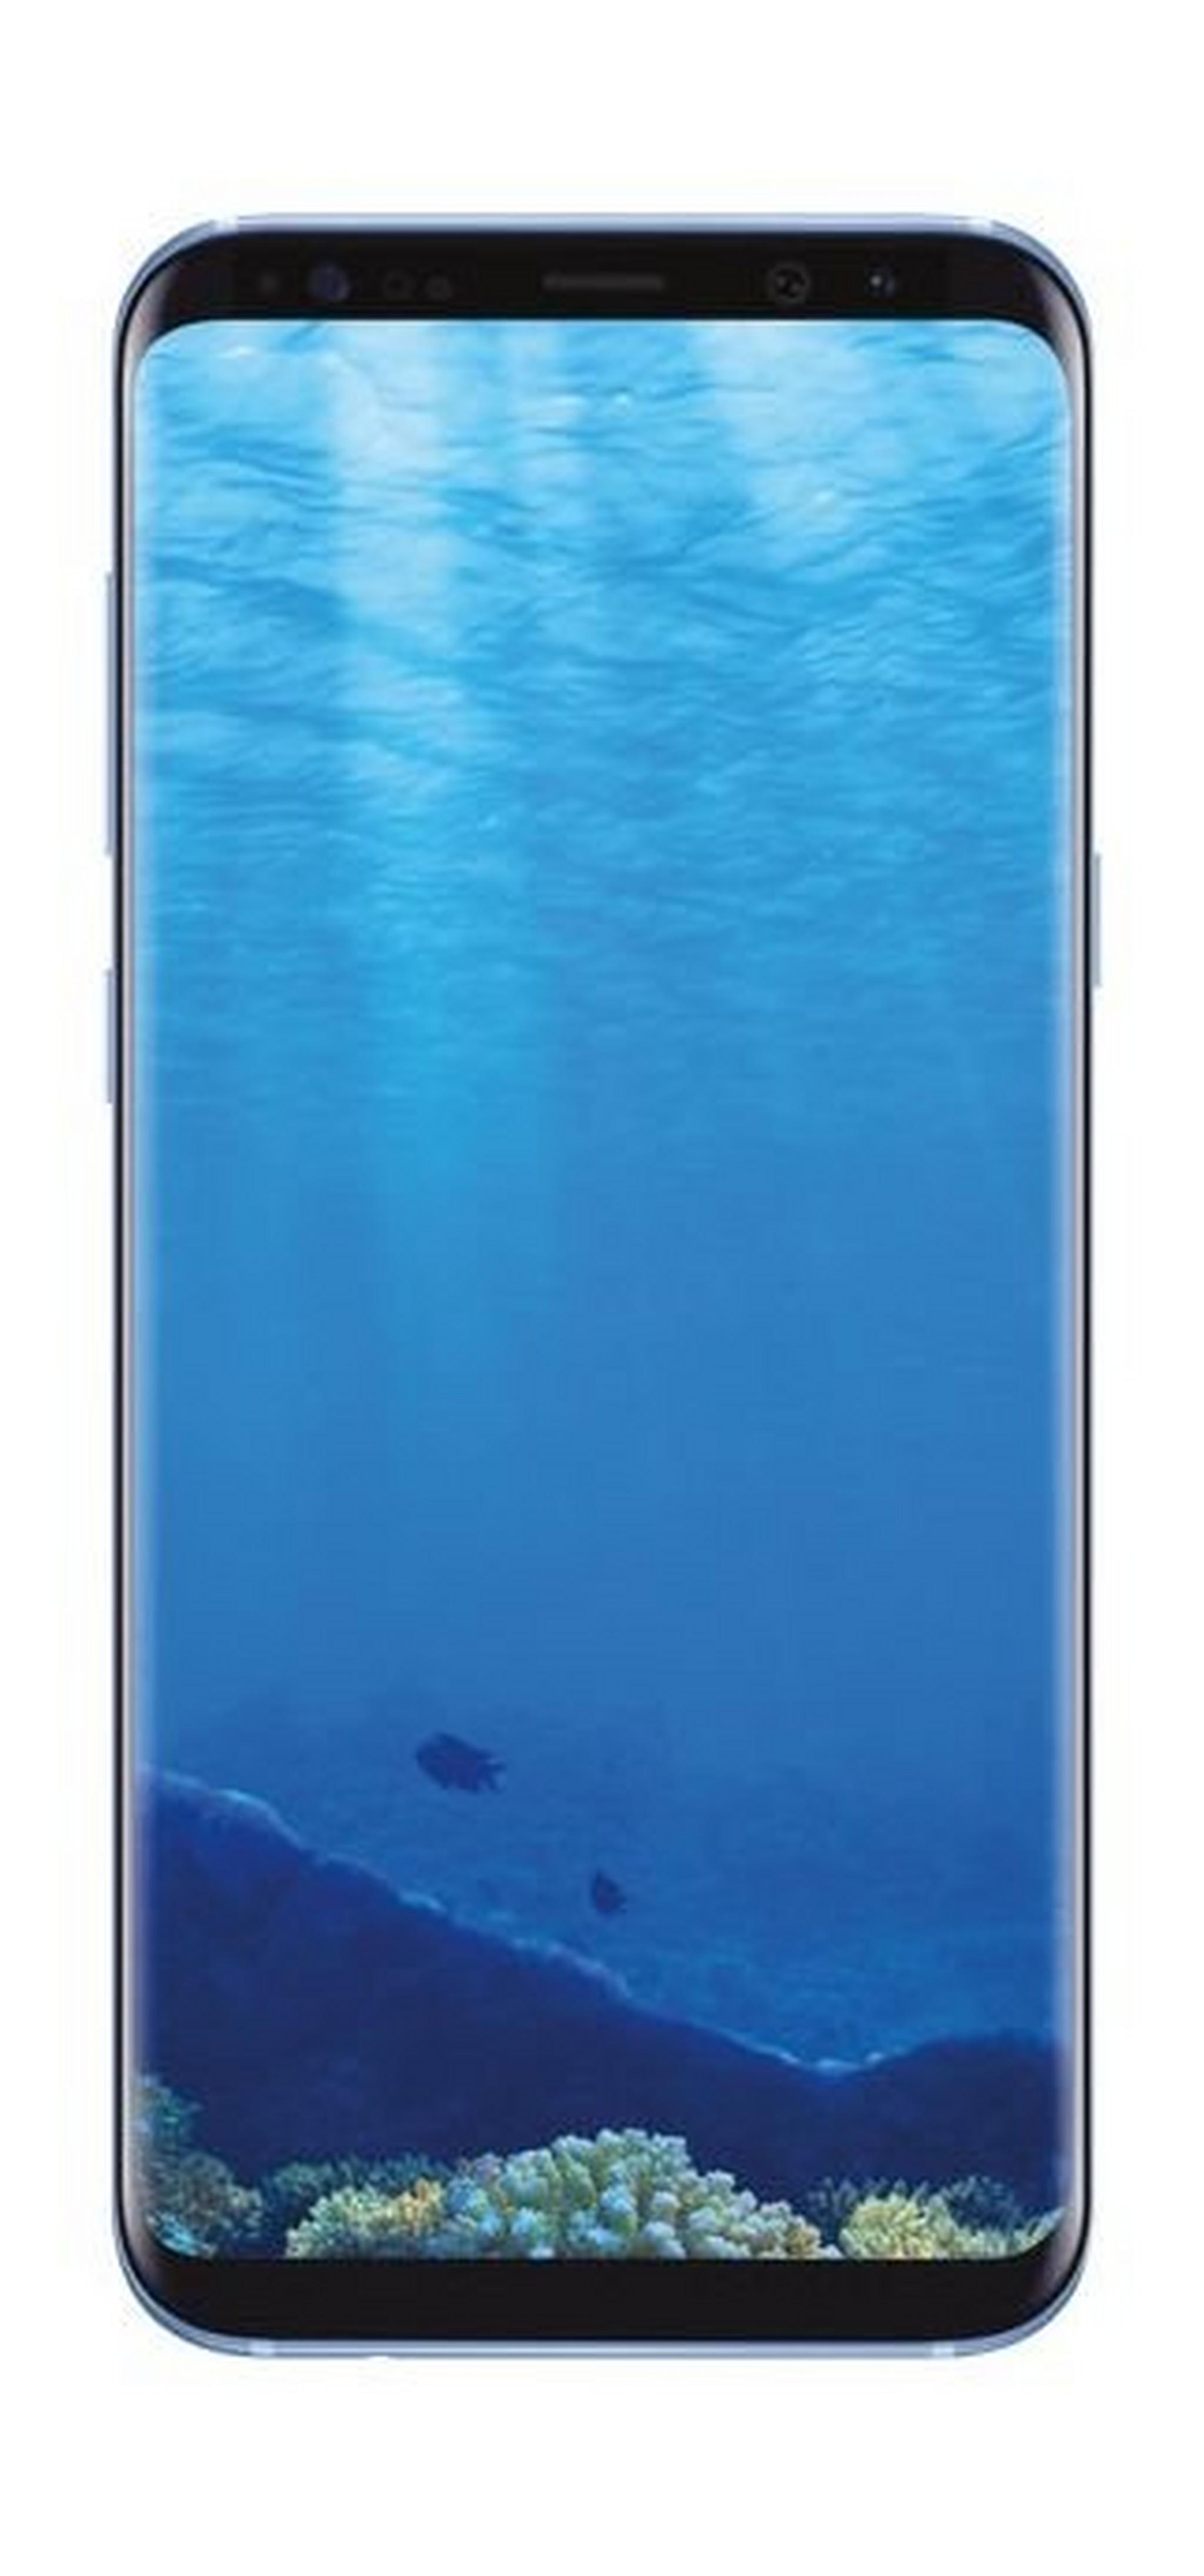 Samsung Galaxy S8 Plus 6.2-inch Smartphone, 64GB 12MP 4G LTE Dual Sim – Blue